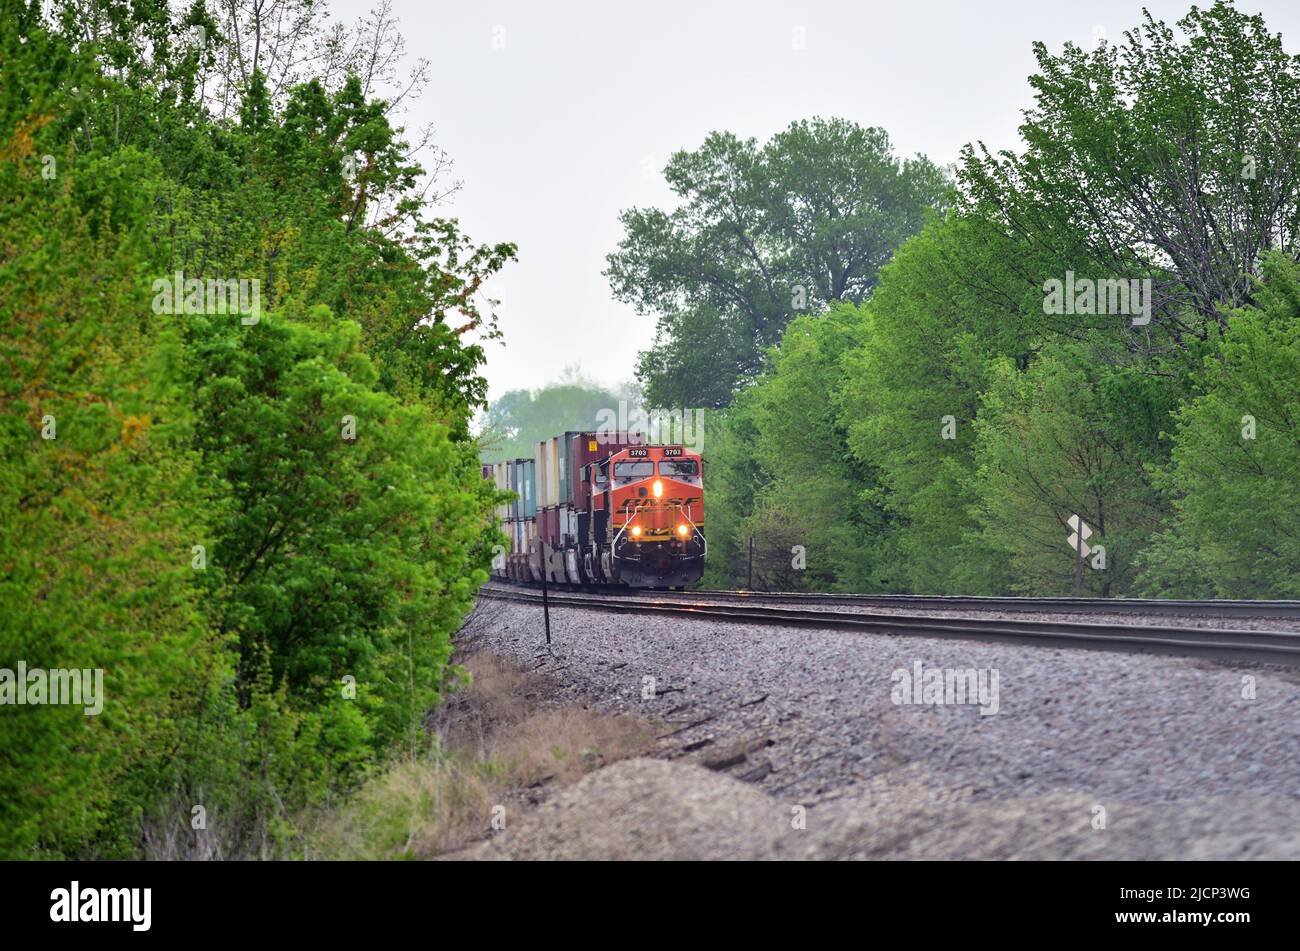 Niota, Illinois, Estados Unidos. Un tren de carga intermodal Burlington Northern Santa Fe, que va al oeste y va a ser regado por un par de locomotoras, espera una señal verde. Foto de stock